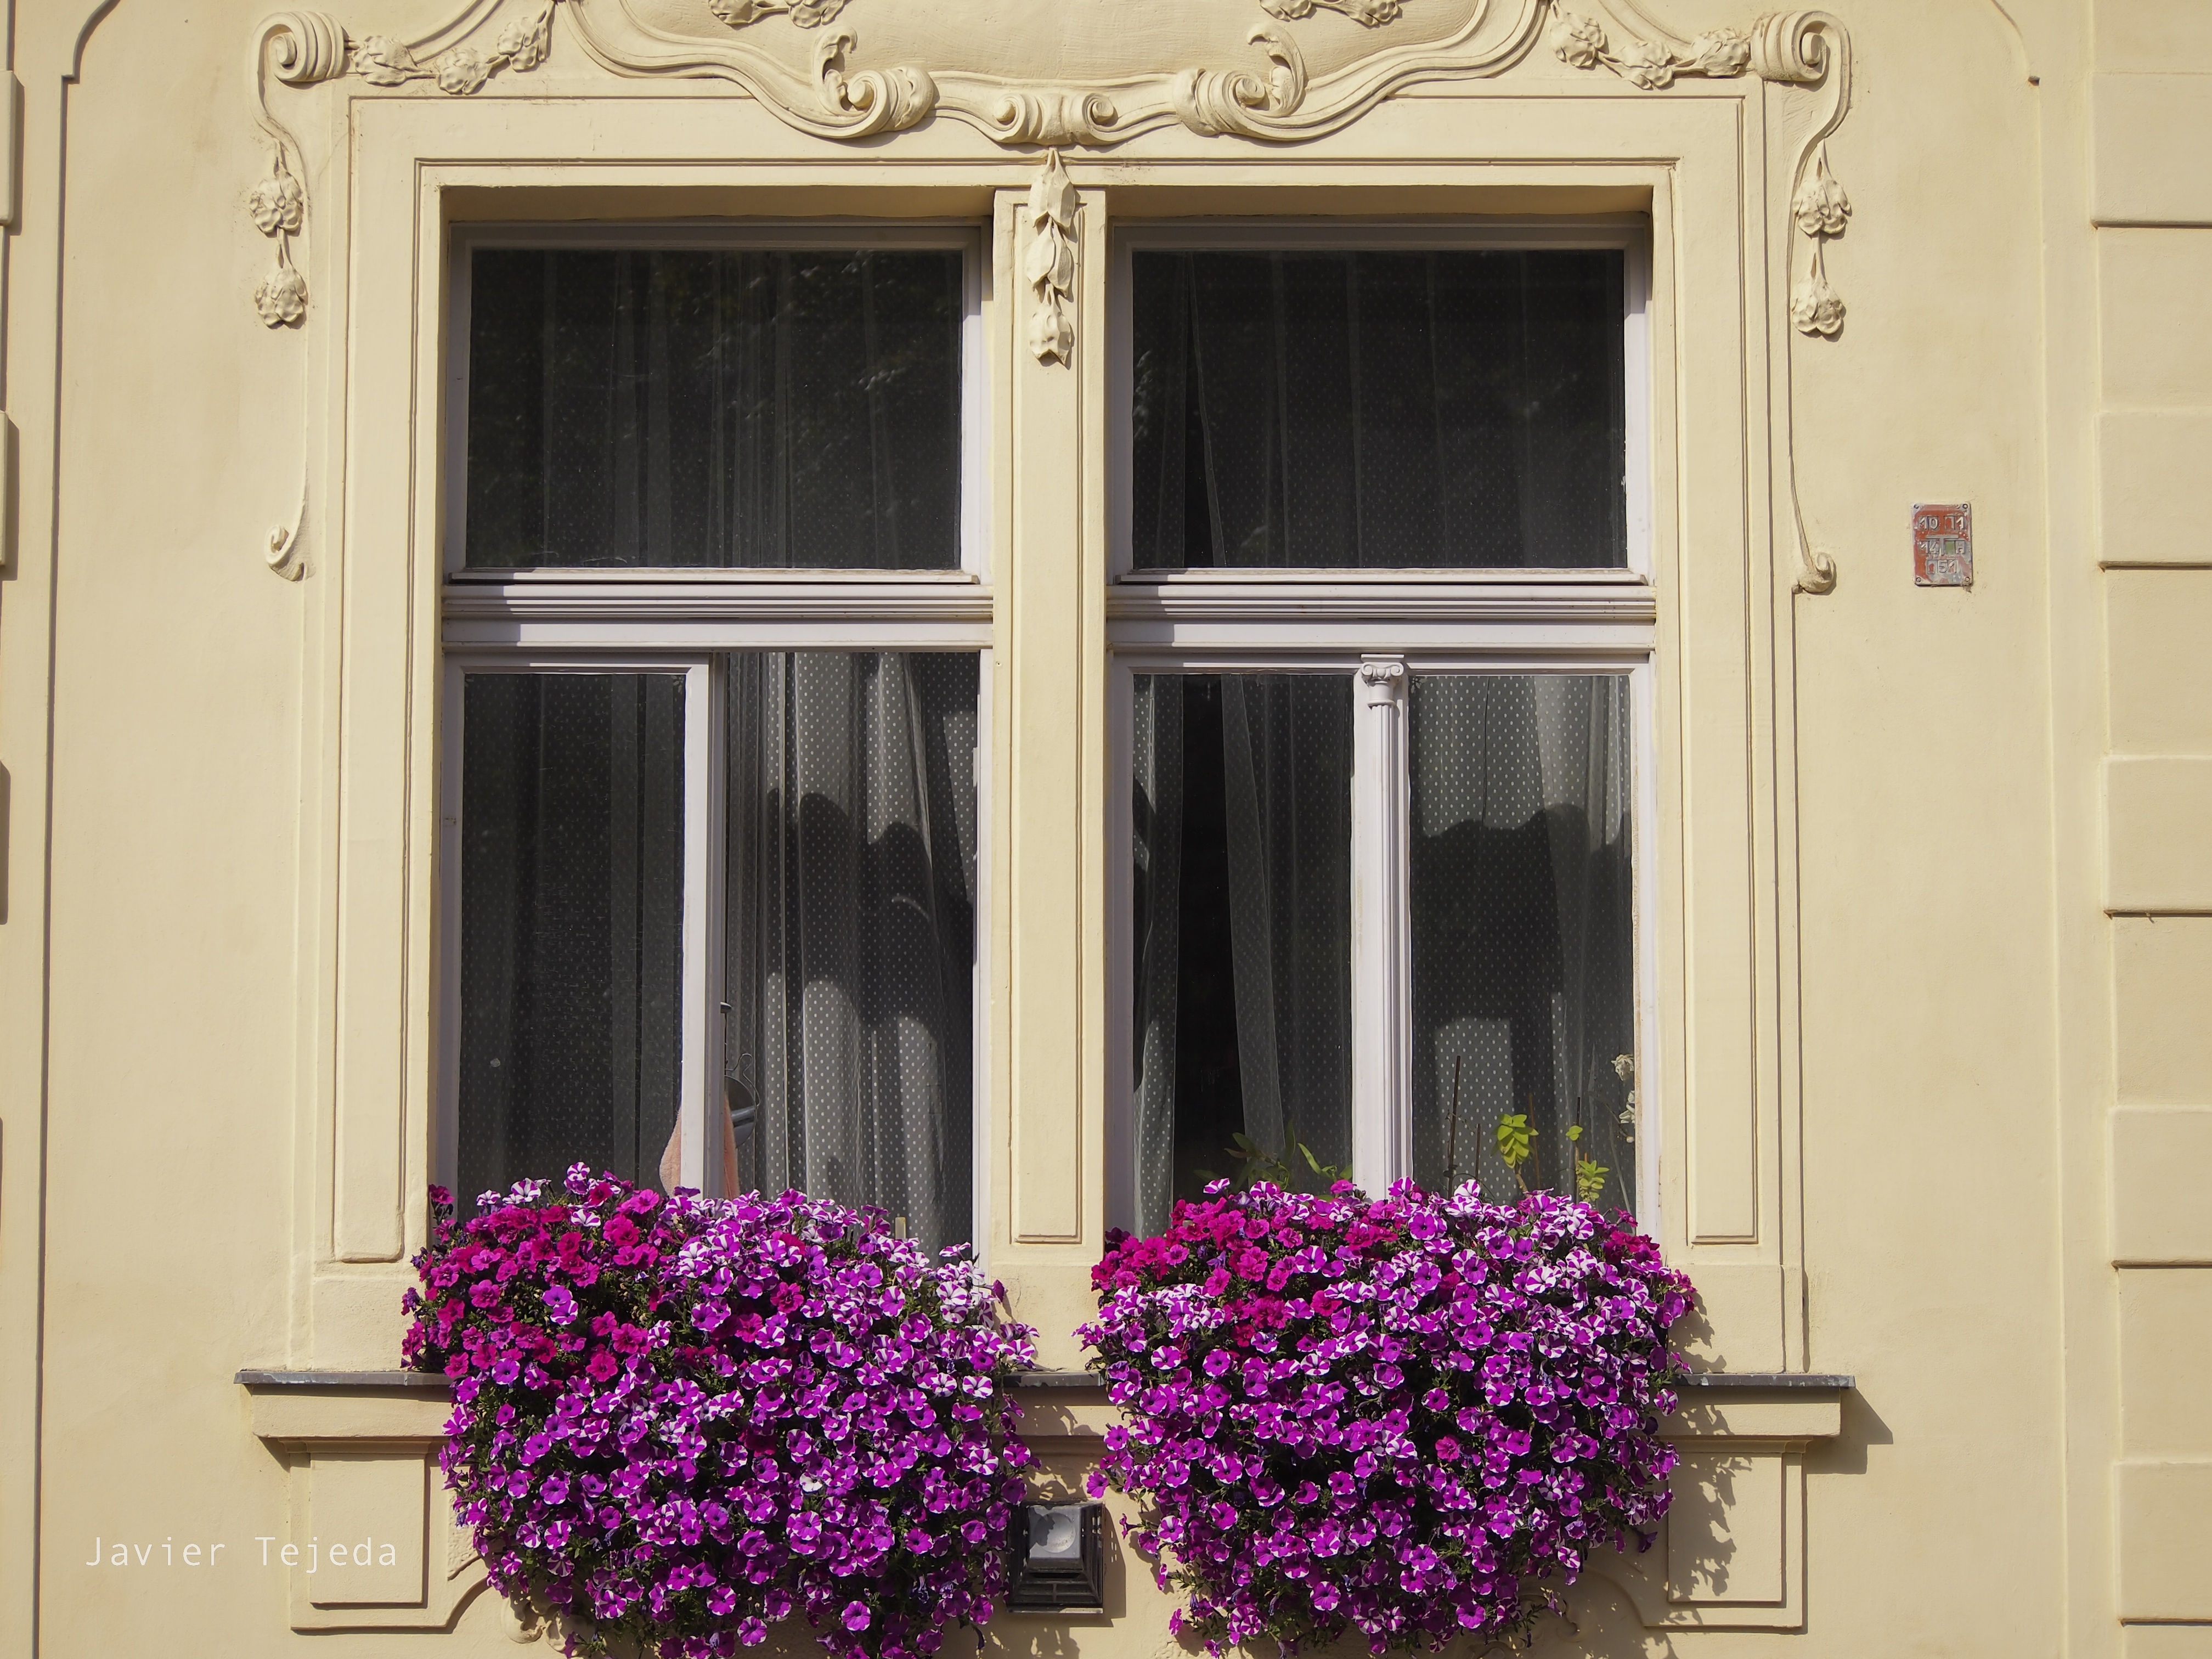 General 4032x3024 Czech building flowers window